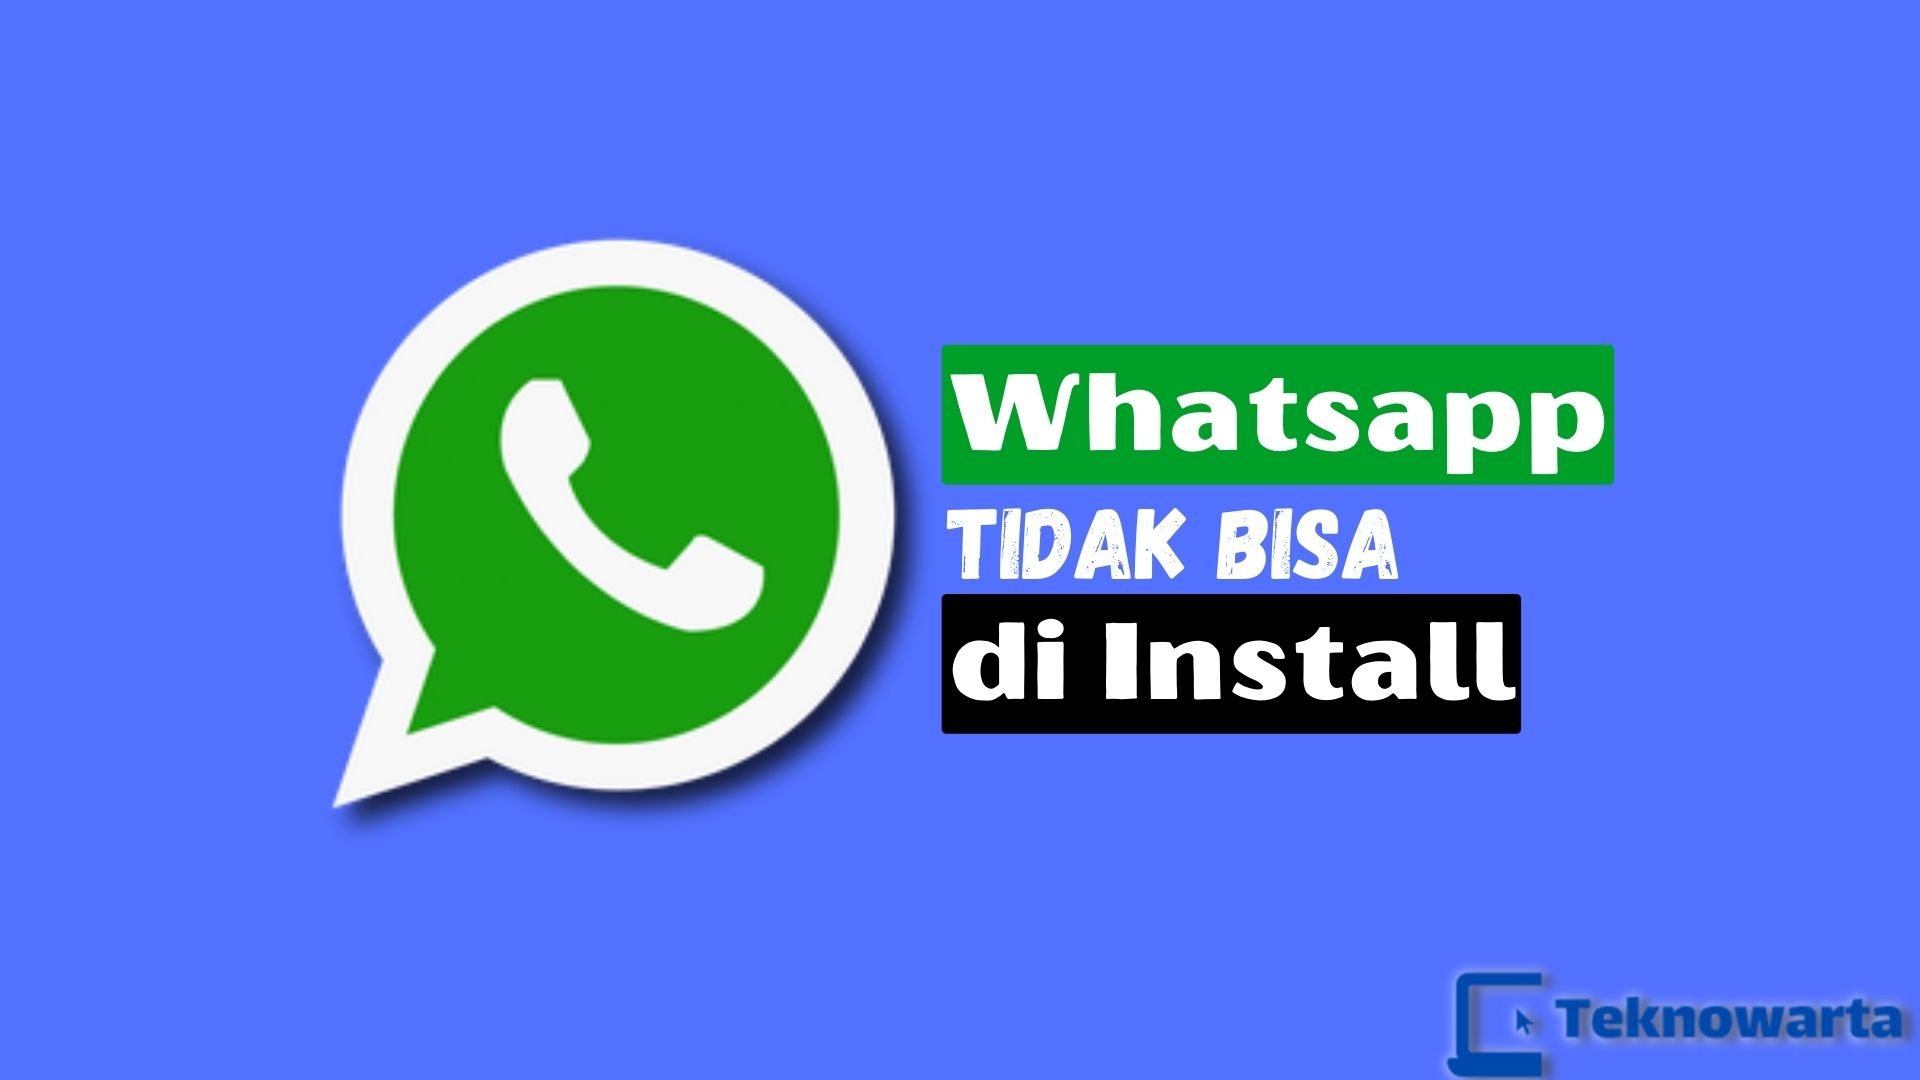 WhatsApp Tidak Bisa Di Install, Ini Penyebab dan Solusinya